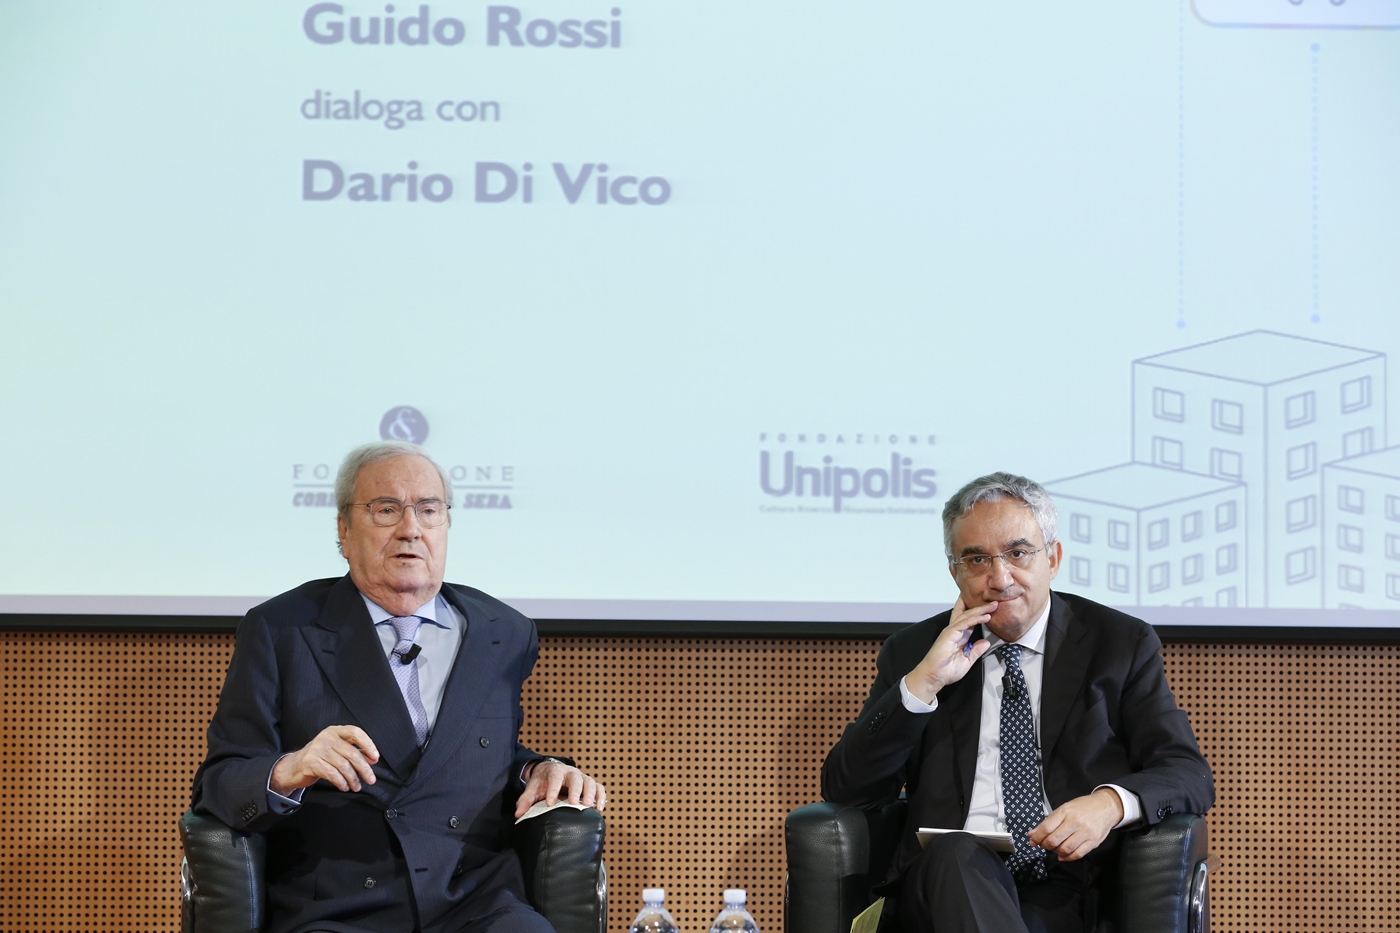 Guido Rossi, Dario Di Vico